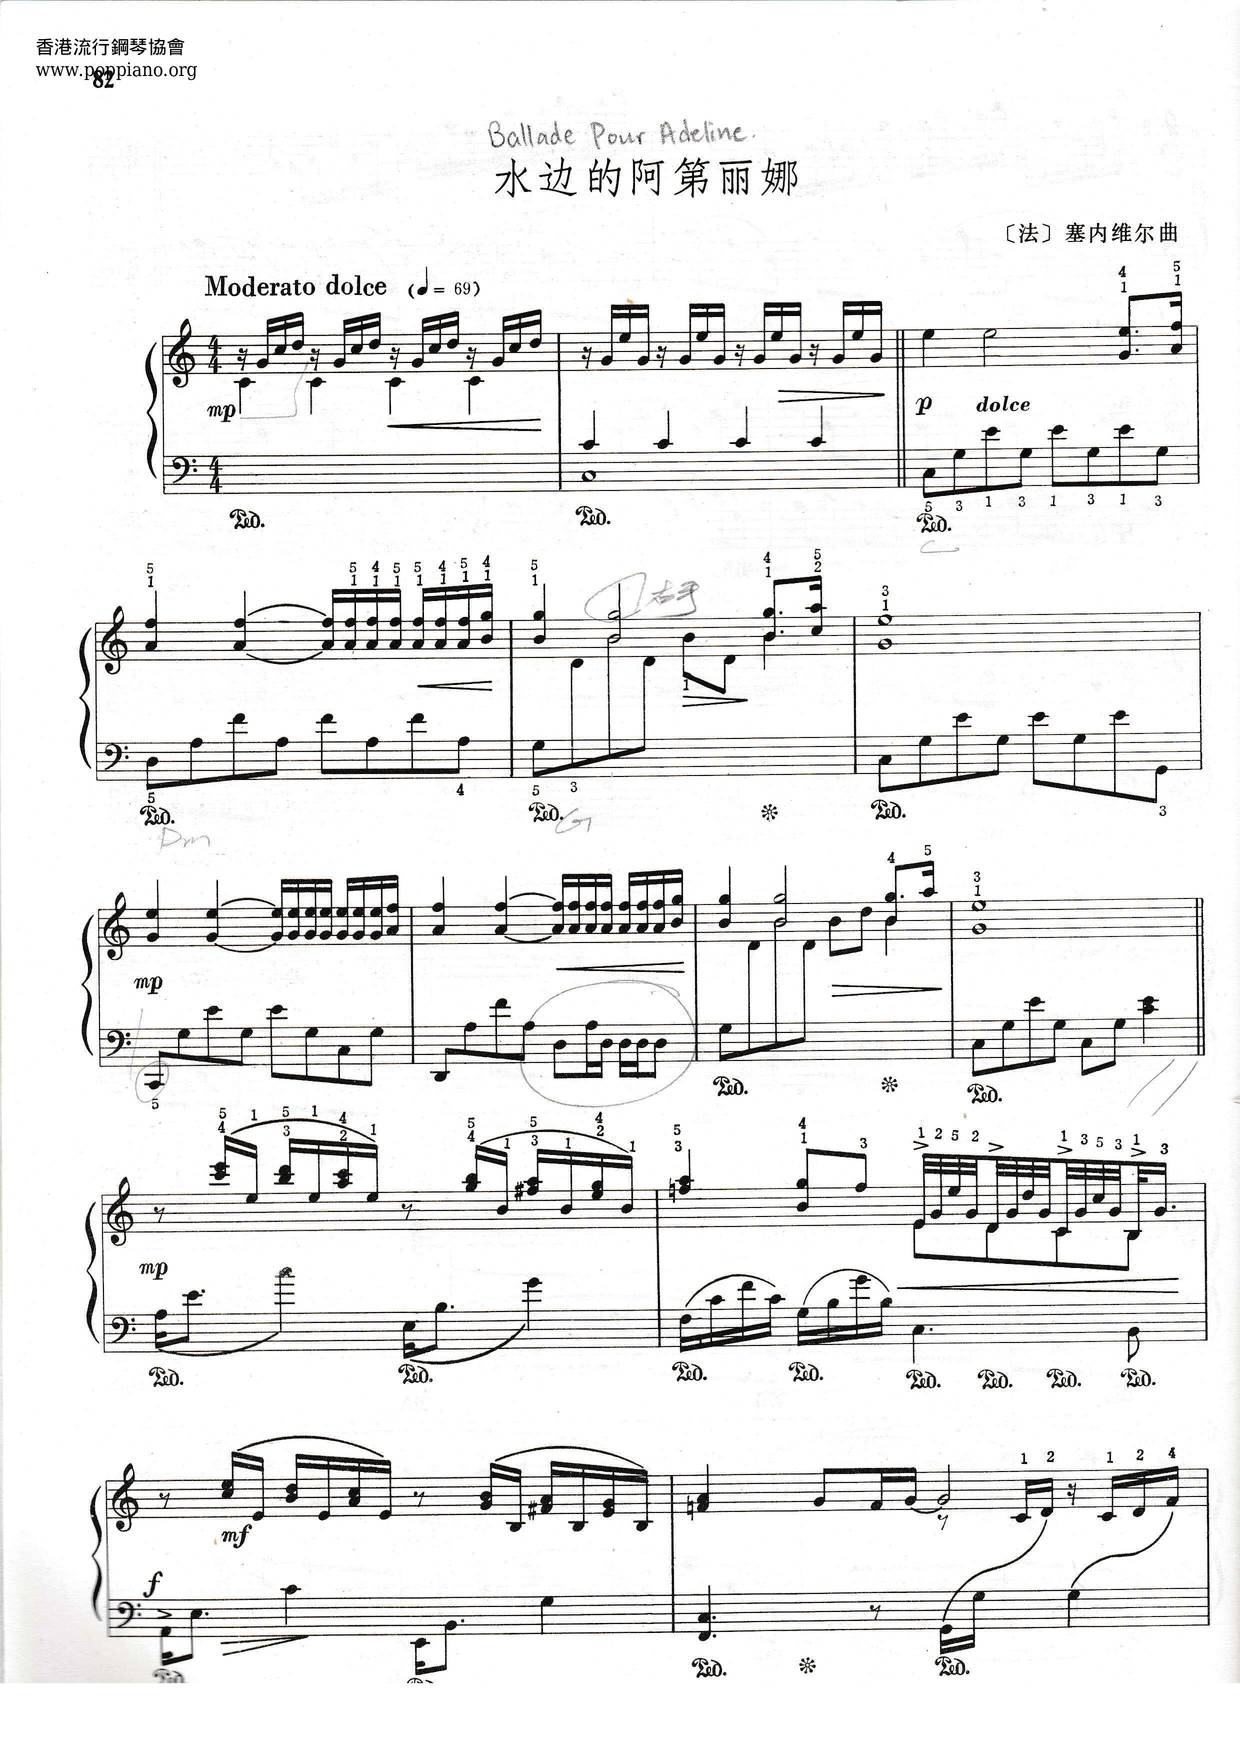 Richard Clayderman Ballade Pour Adeline Sheet Music Pdf リチャード クレイダーマン Free Score Download